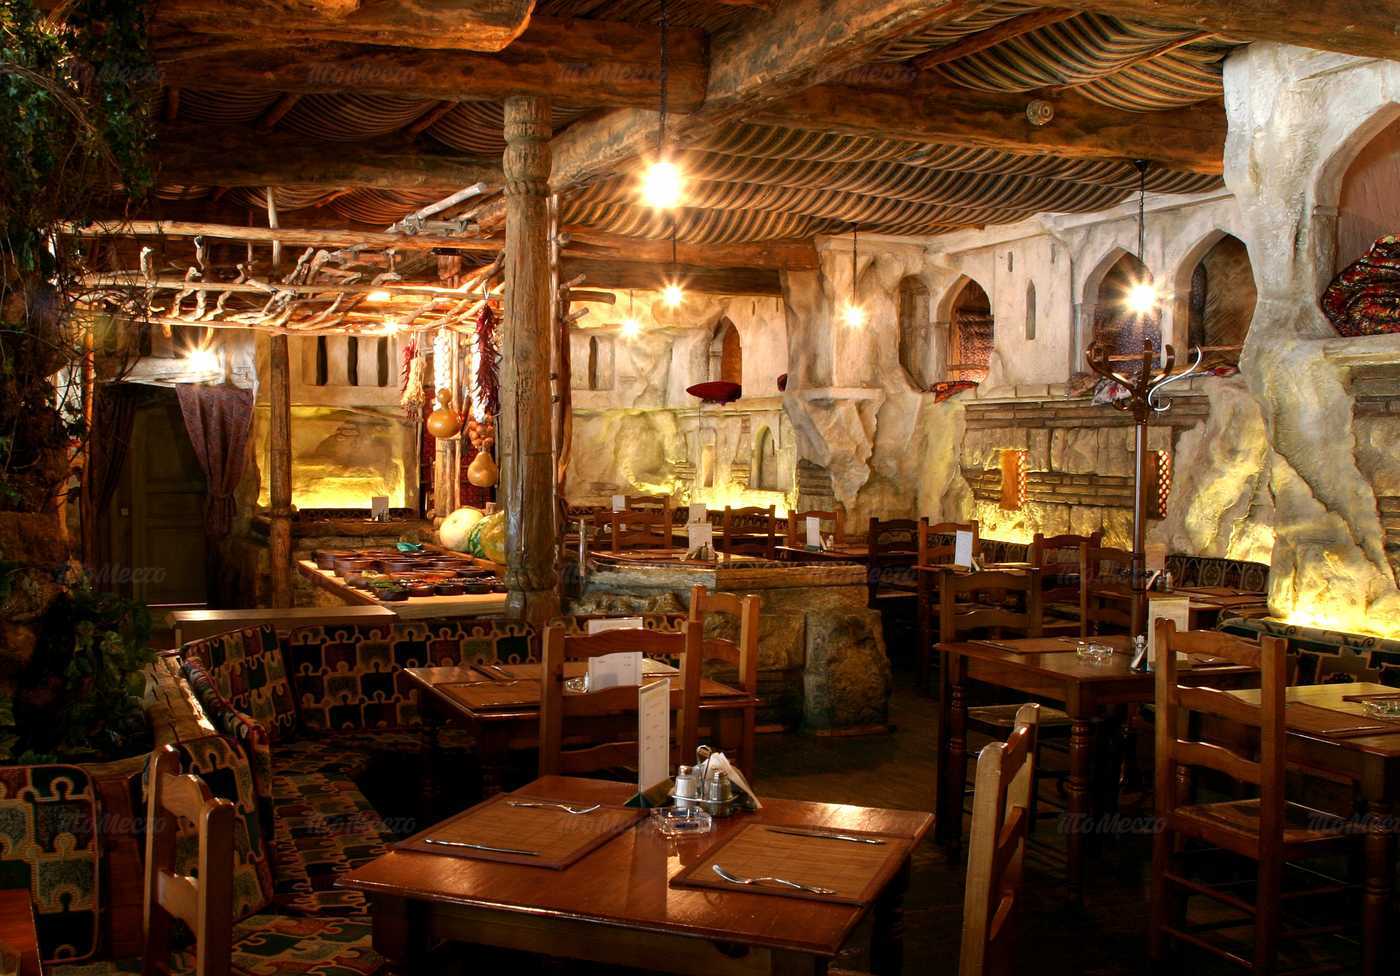 Ресторан Киш-Миш (Чайхана Киш-Миш) в МКАД 21 километр (внутр.)